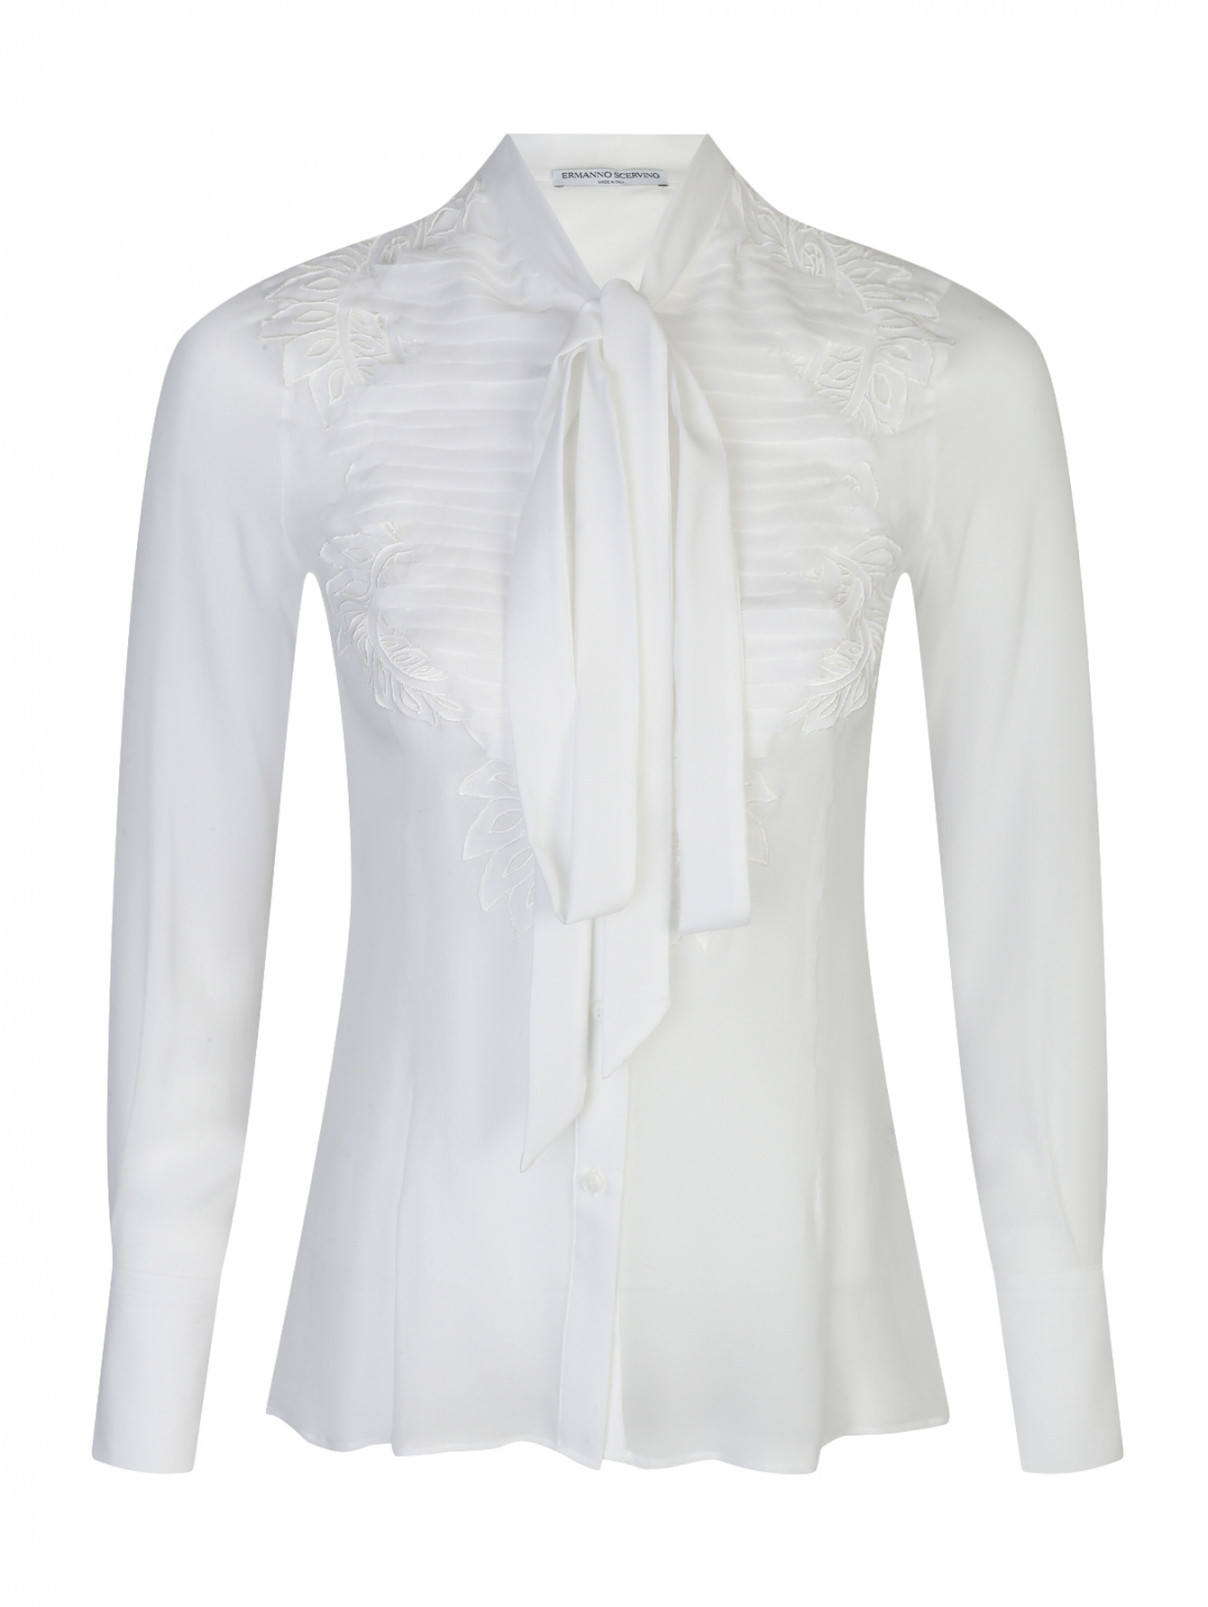 Шелковая блуза с декором Ermanno Scervino  –  Общий вид  – Цвет:  Белый